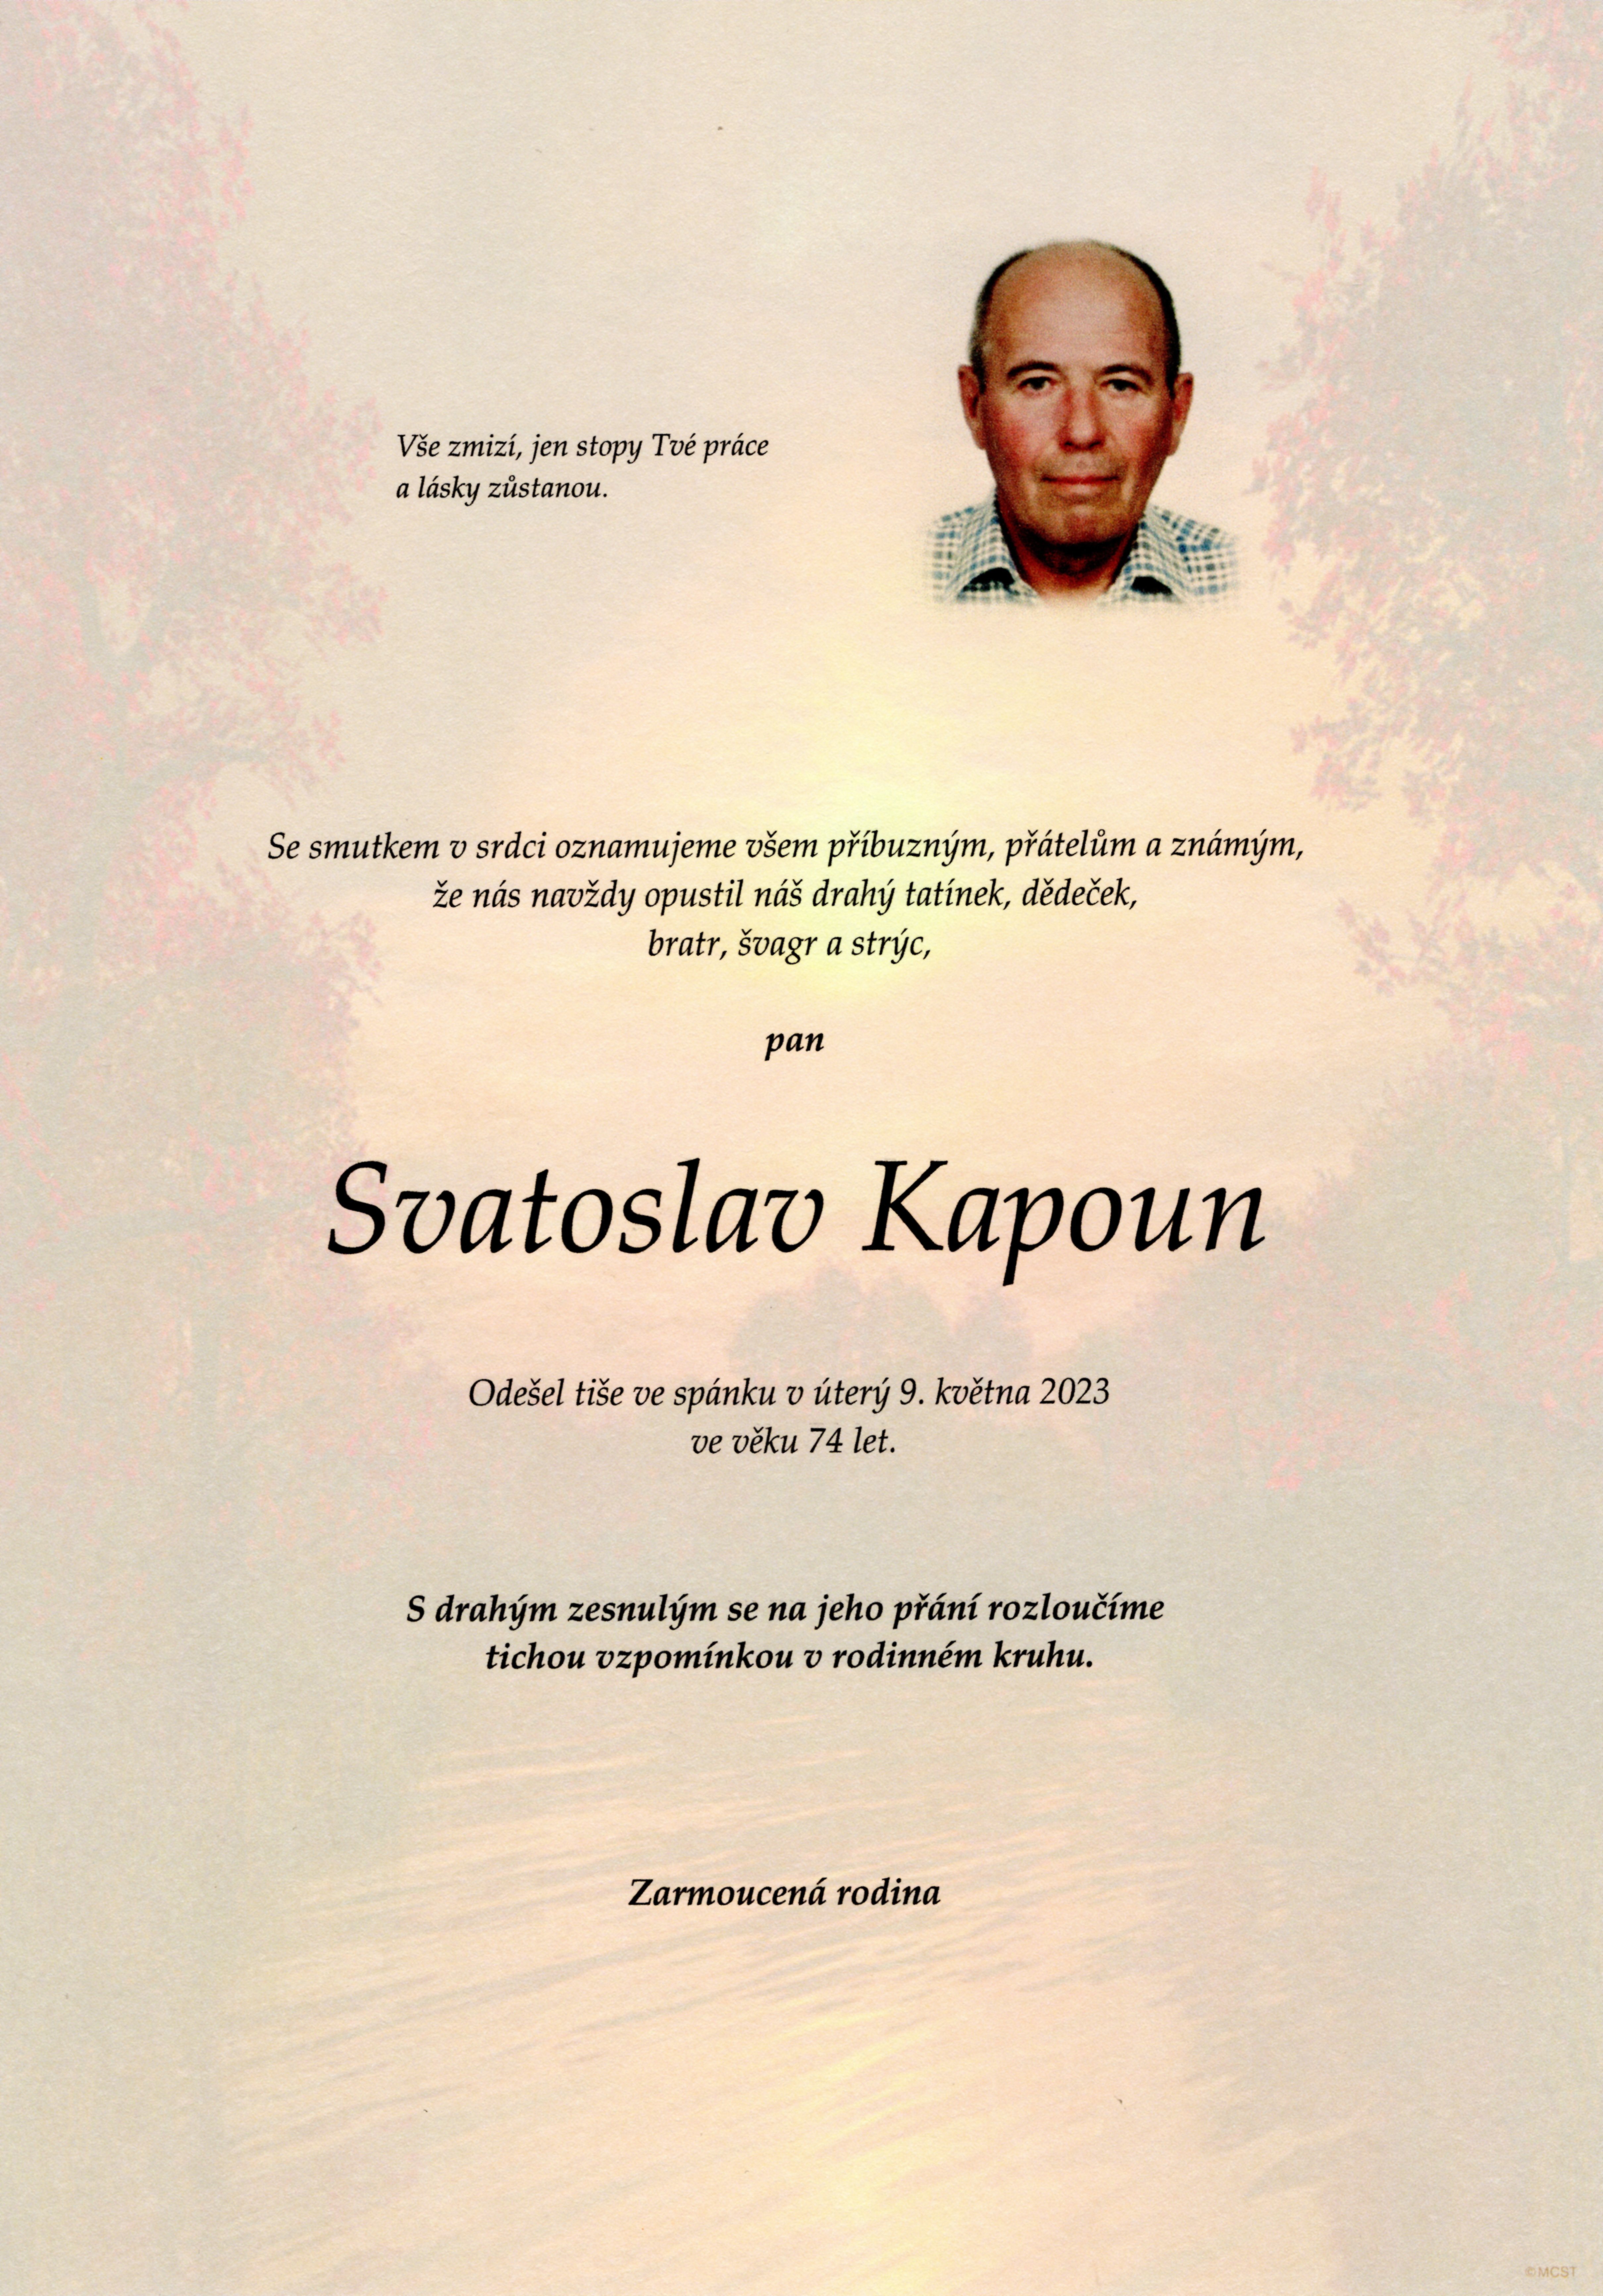 Svatoslav Kapoun